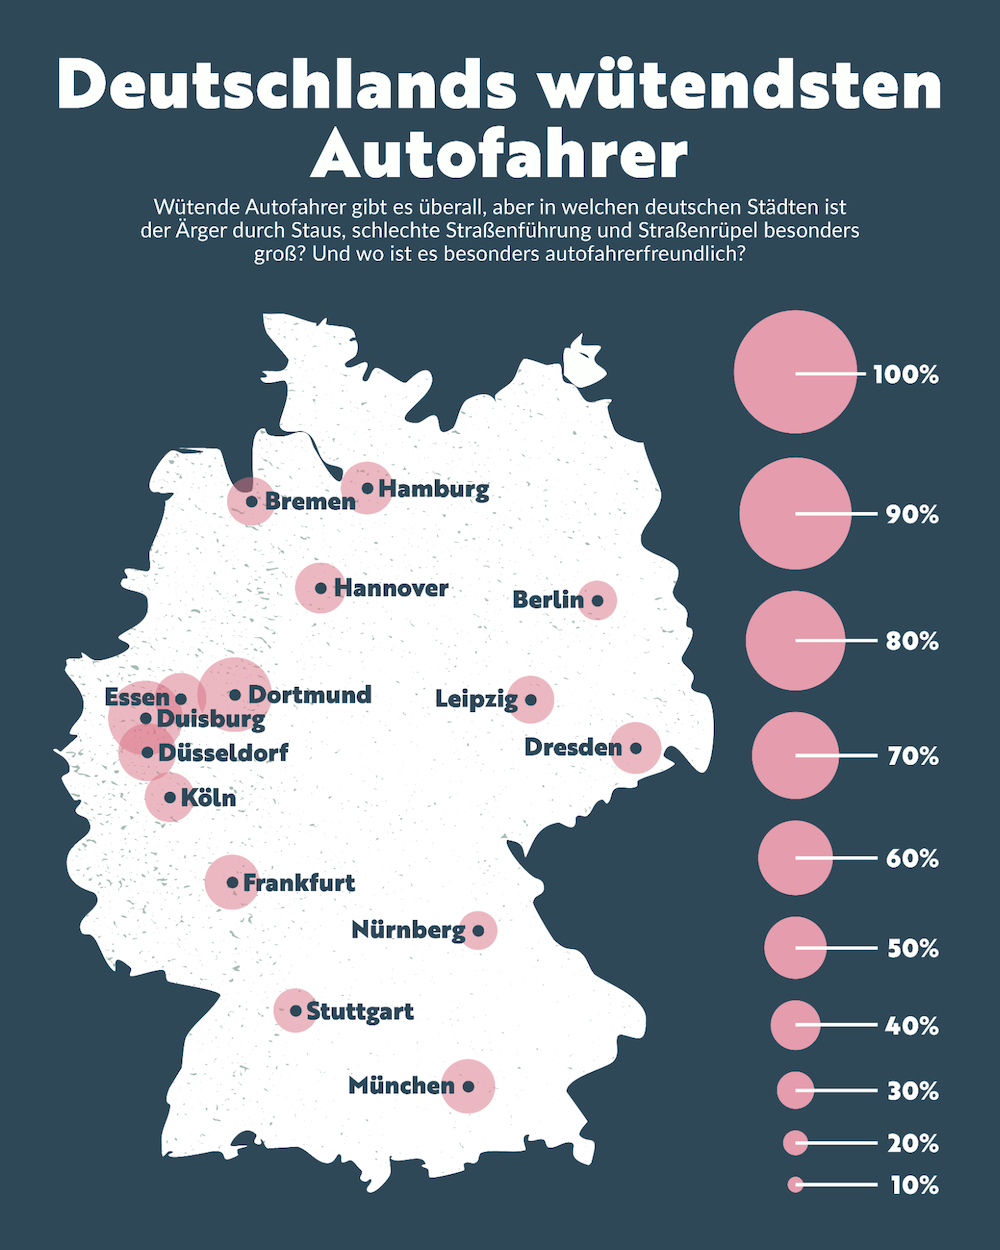 Die deutschen Städte mit den wütendsten Autofahrern